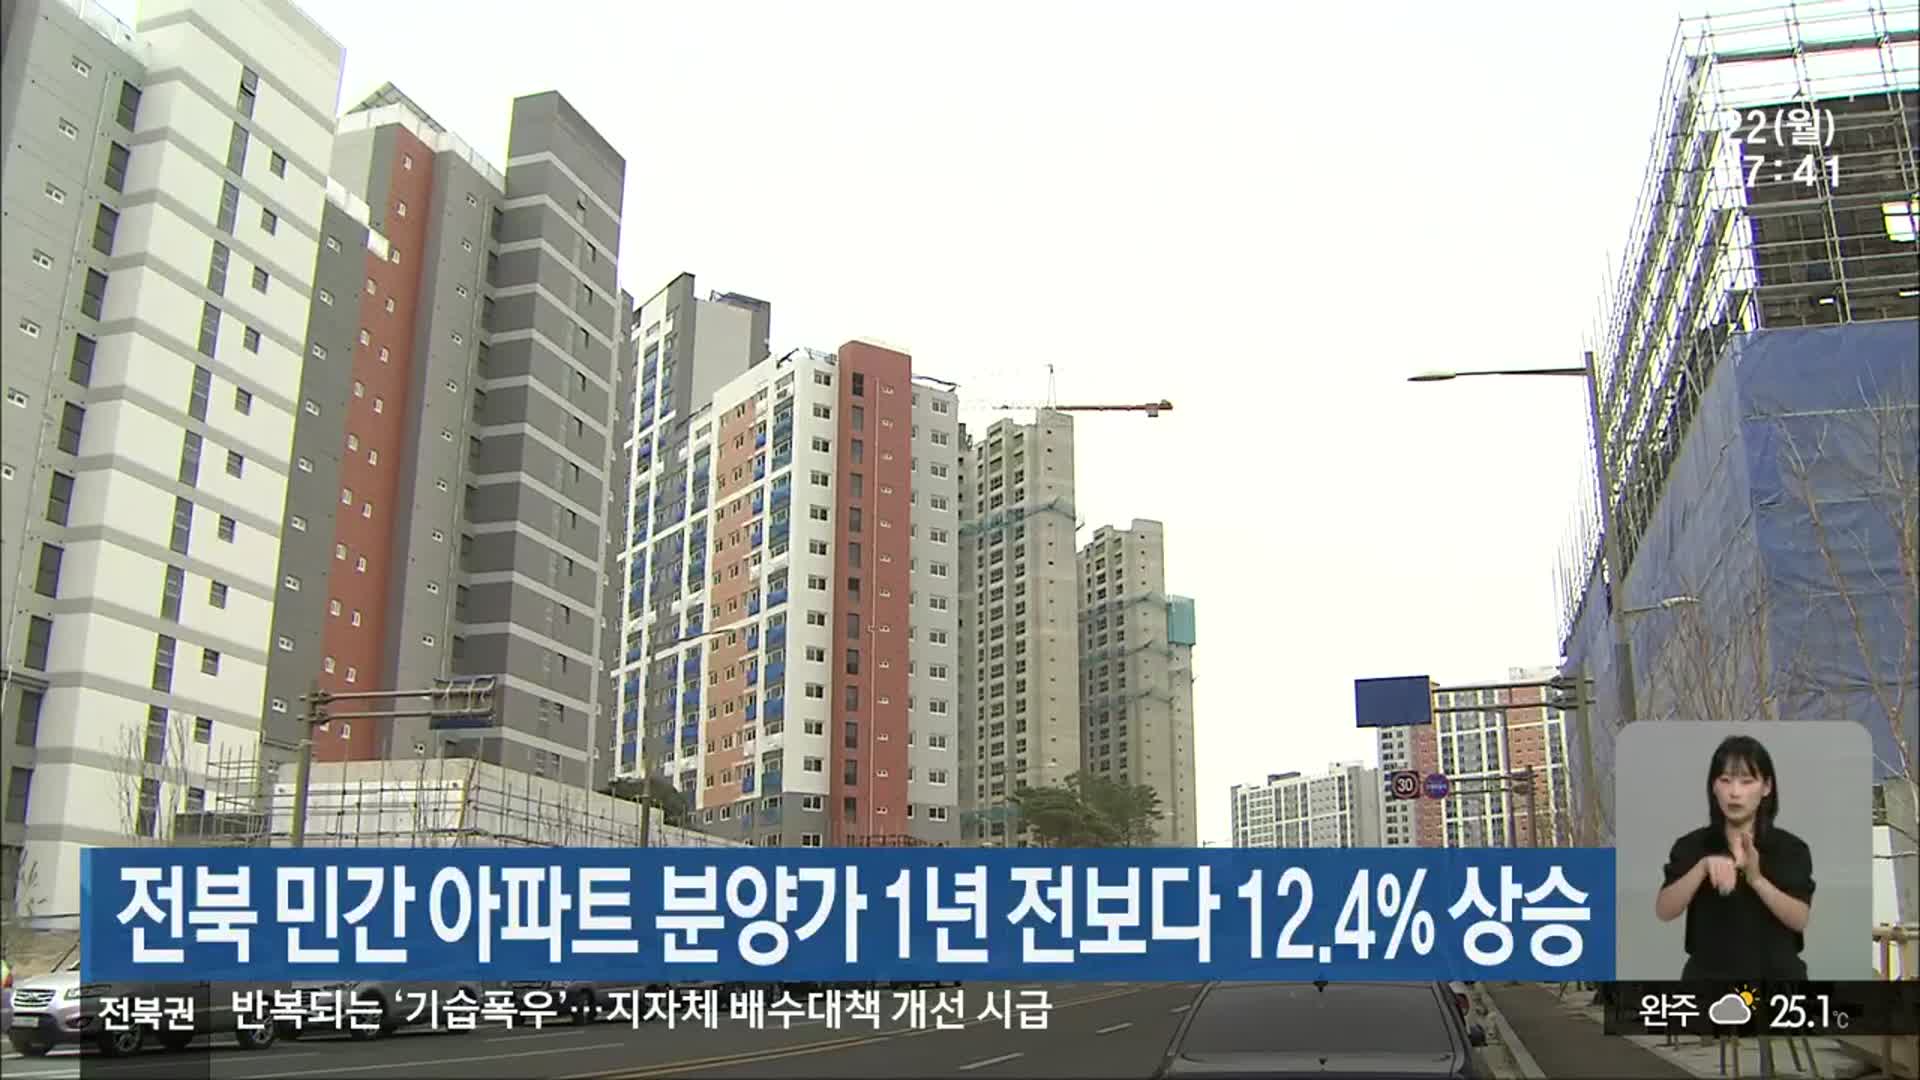 전북 민간 아파트 분양가 1년 전보다 12.4% 상승